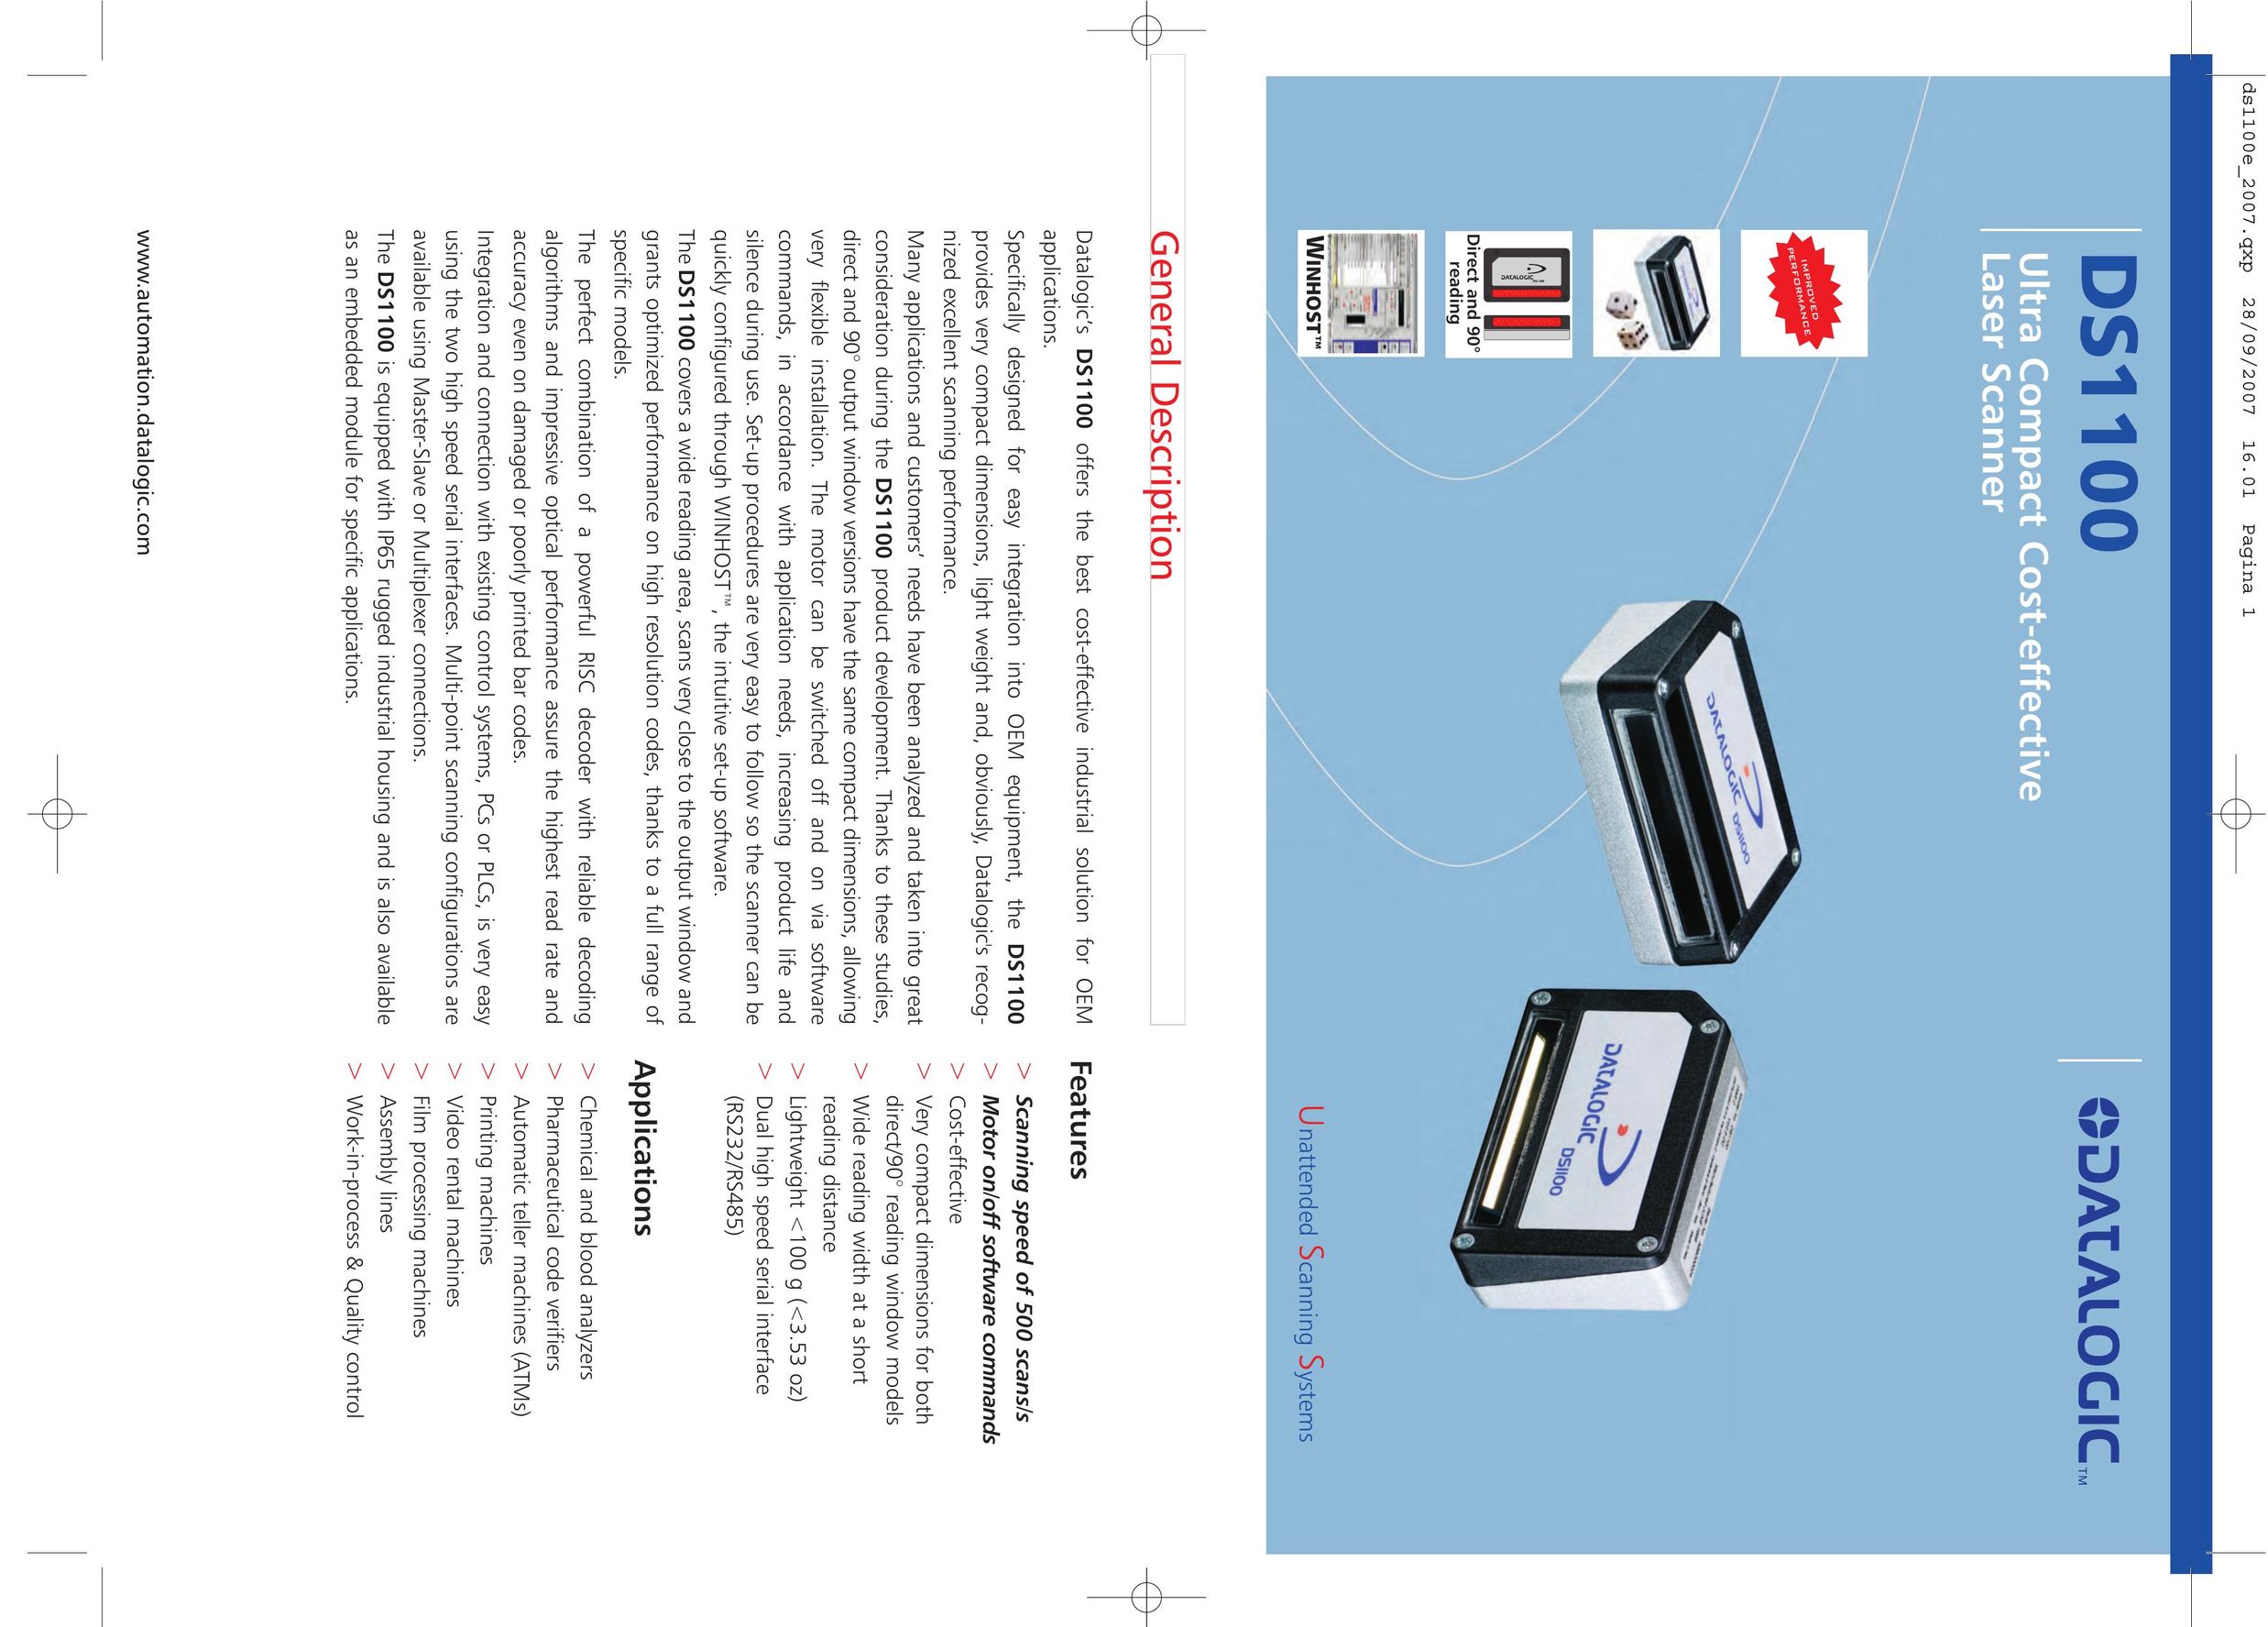 Datalogic Scanning DS1100 Scanner User Manual